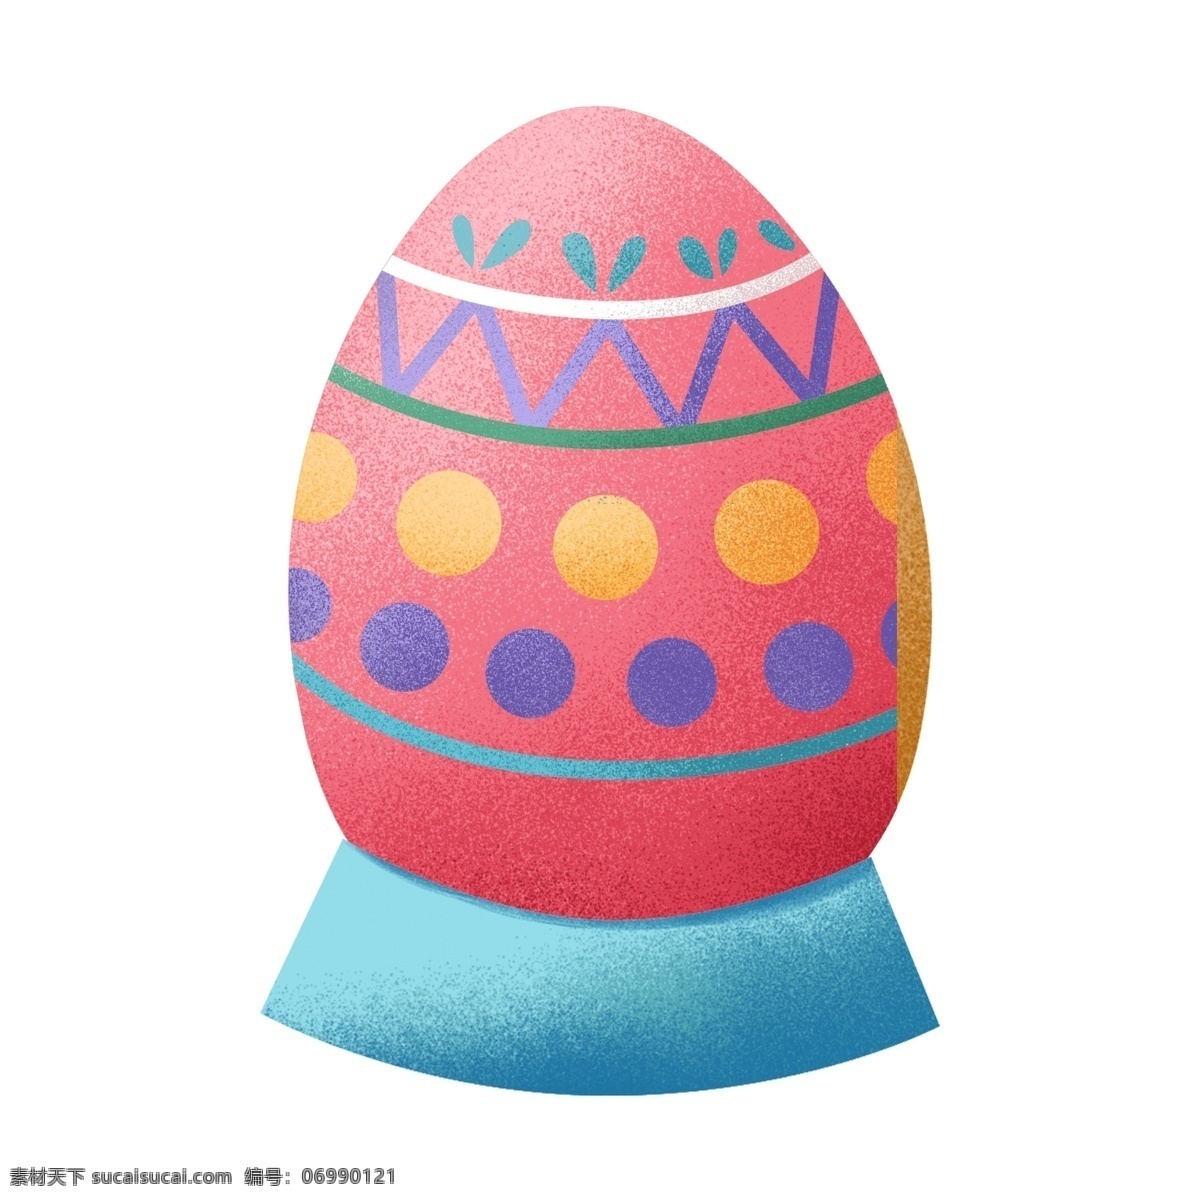 复活节 节日 彩蛋 元素 花纹 可爱 卡通 鸡蛋 蛋 精美